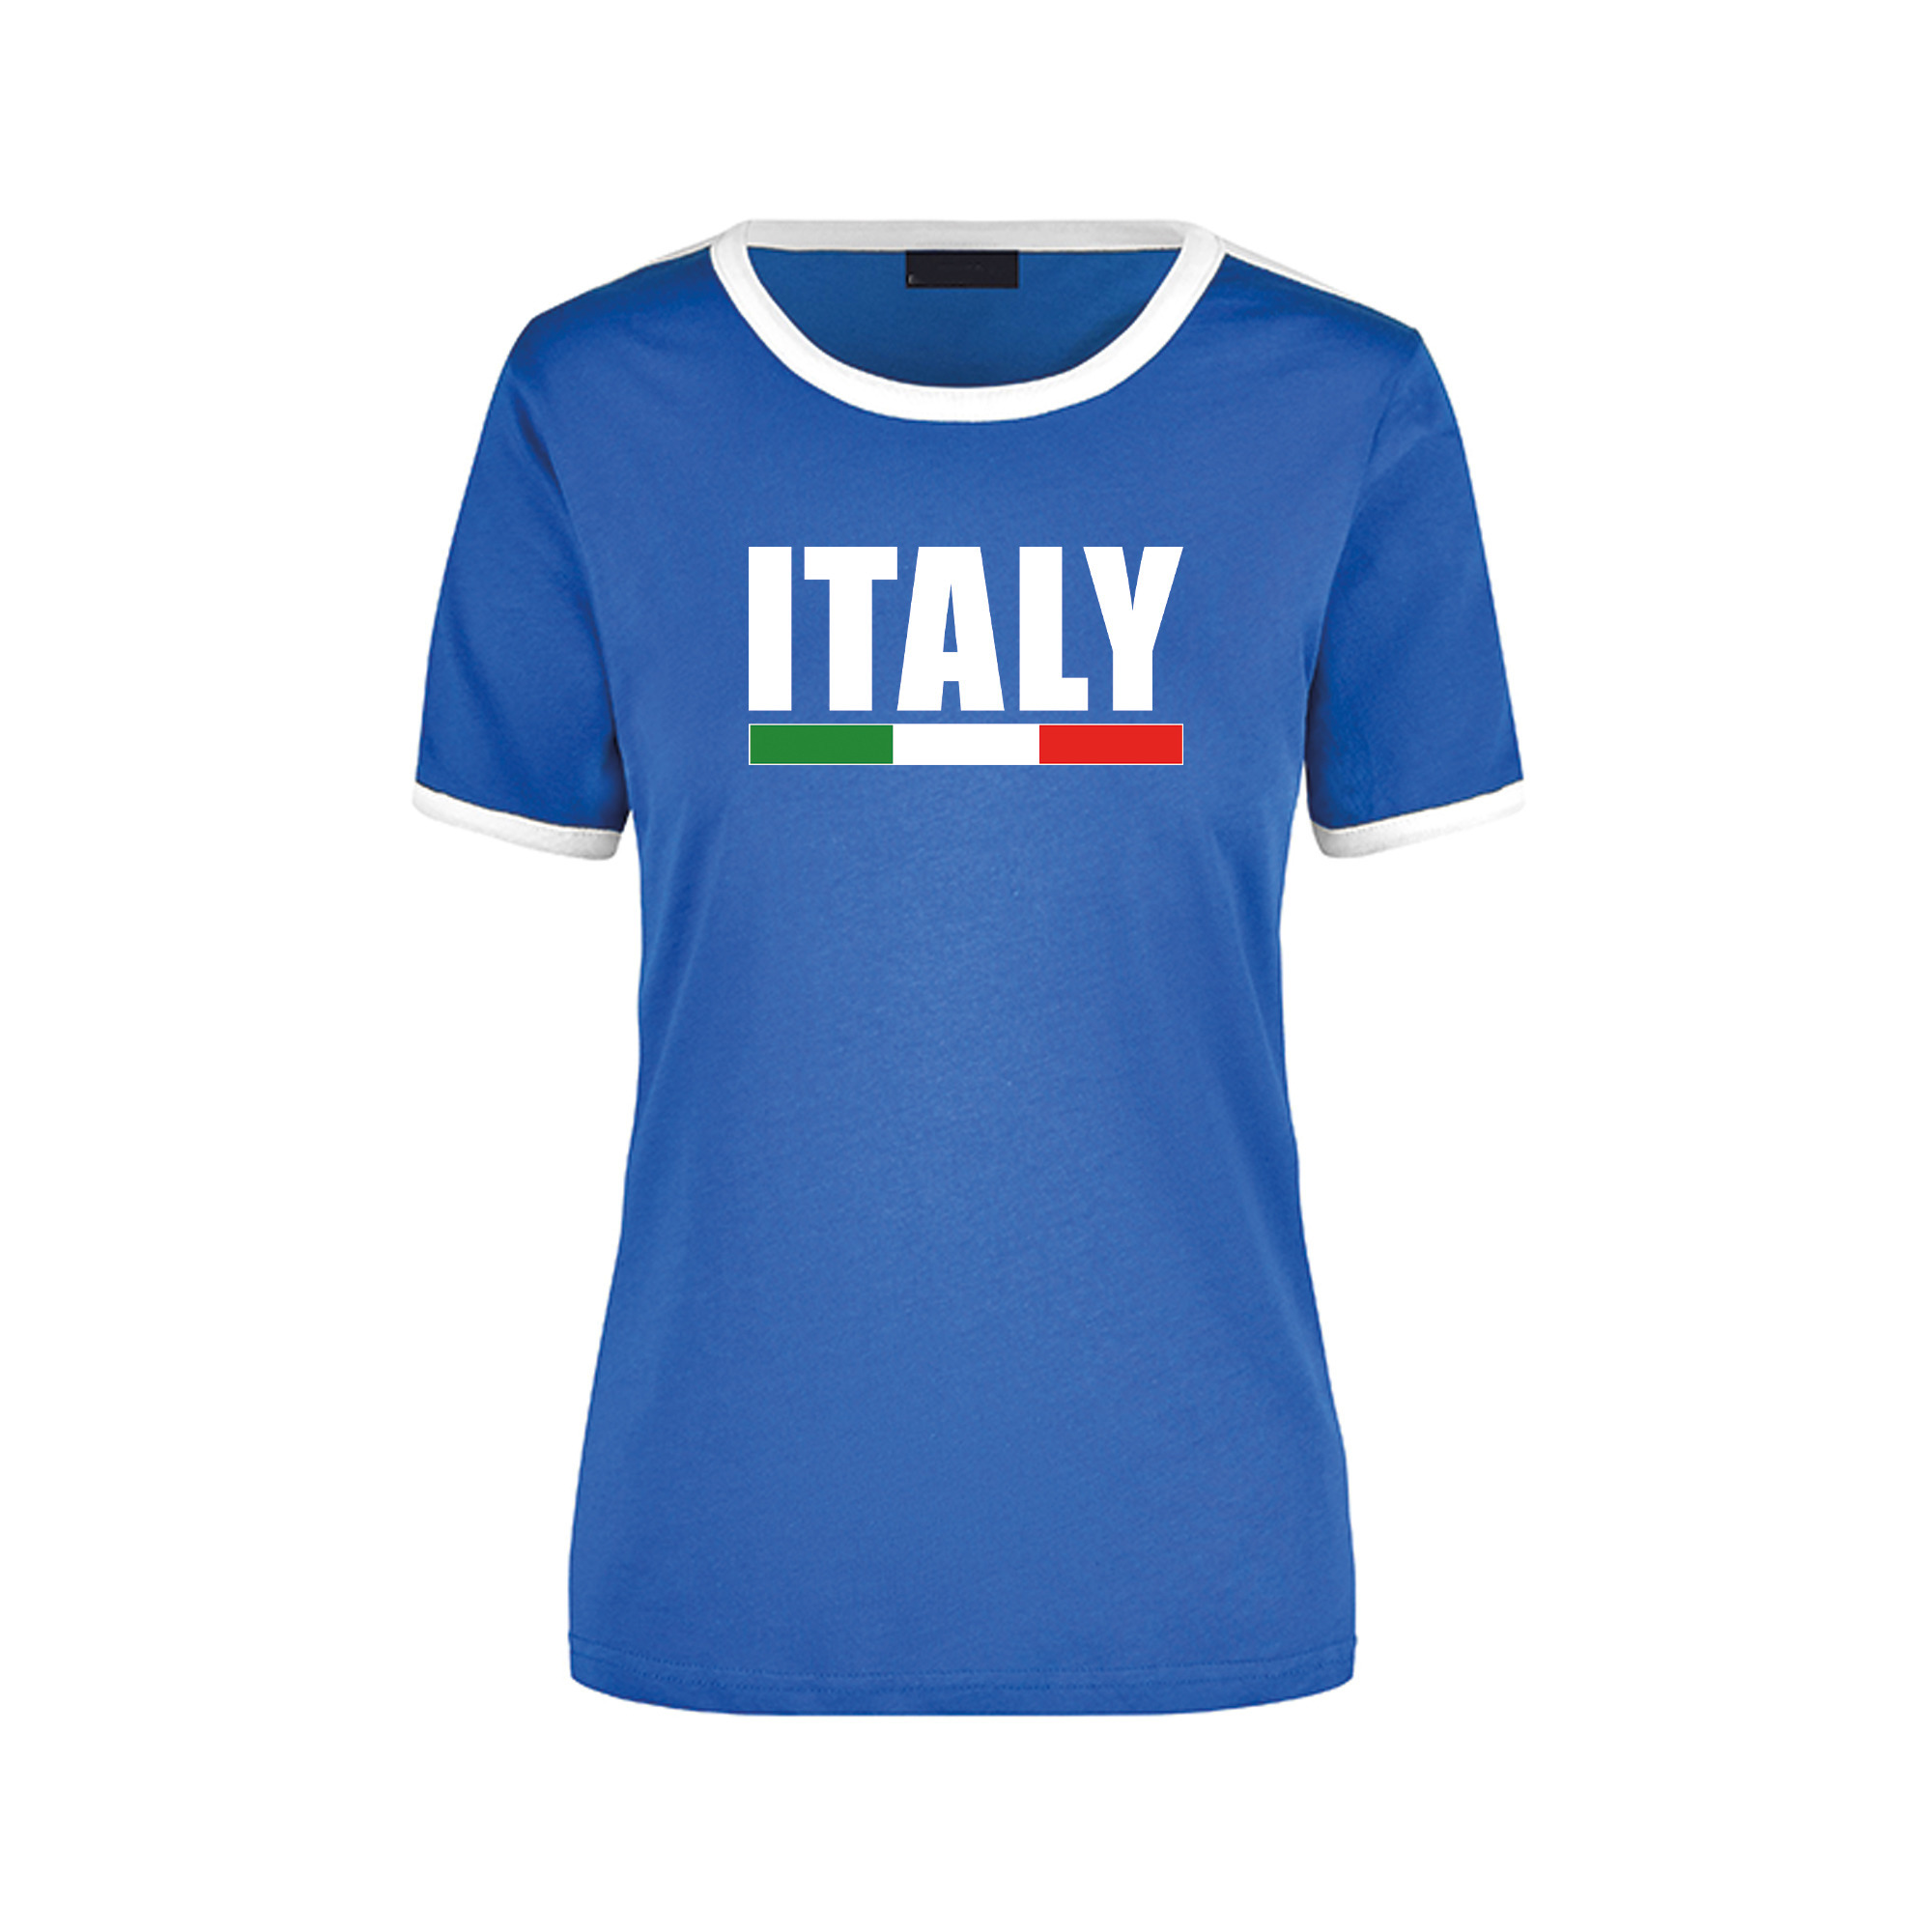 Italy supporter blauw - wit ringer t-shirt Italie met vlag voor dames